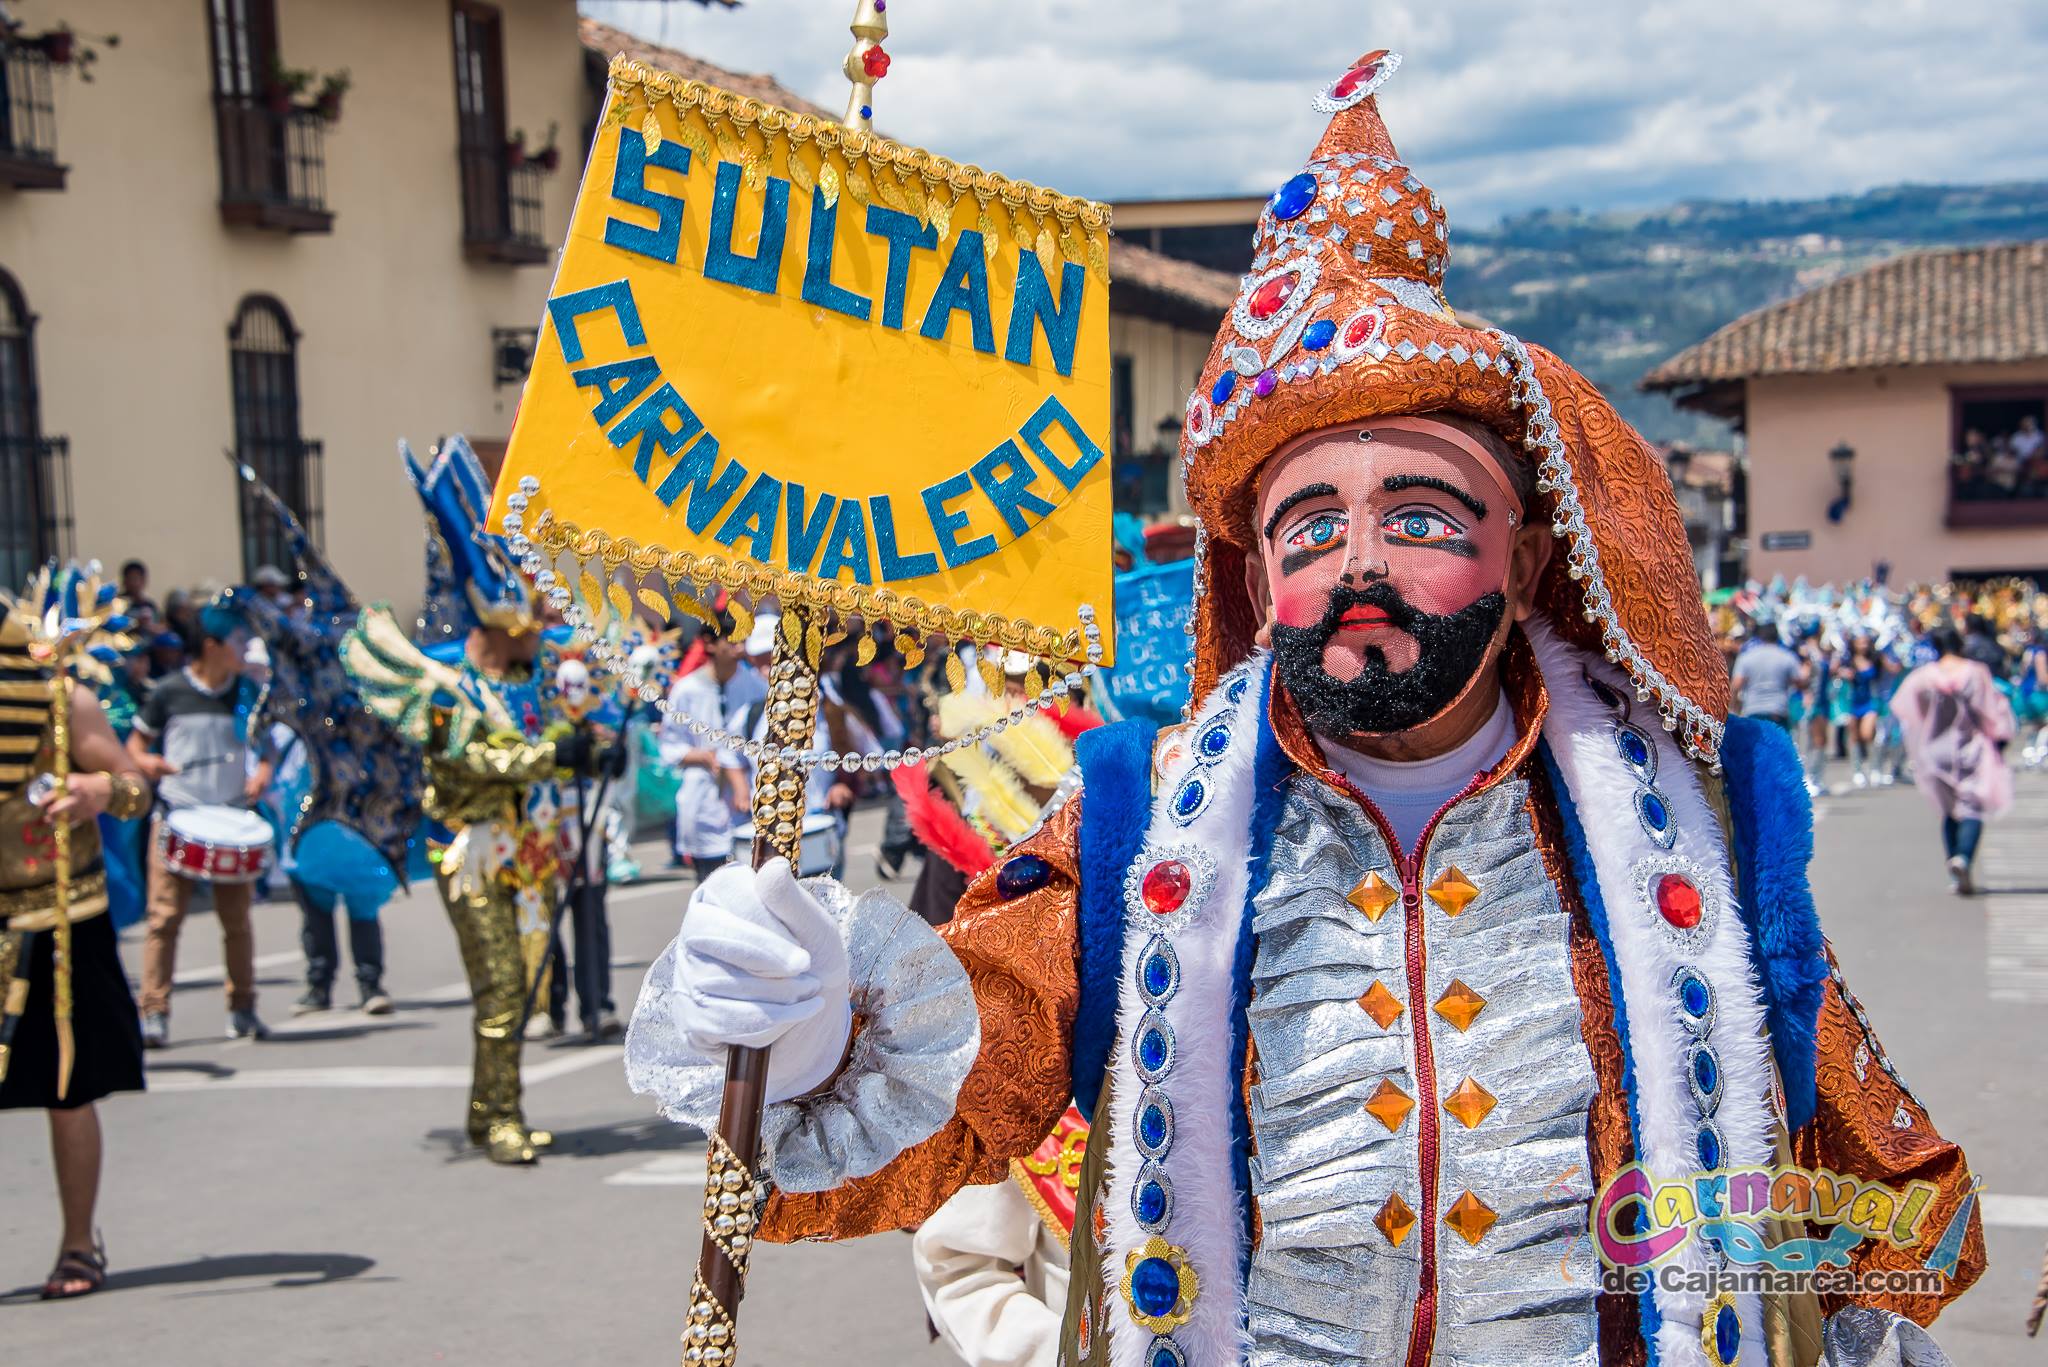 Organiza tu viaje y vive una experiencia única. (Carnaval de Cajamarca Facebook)